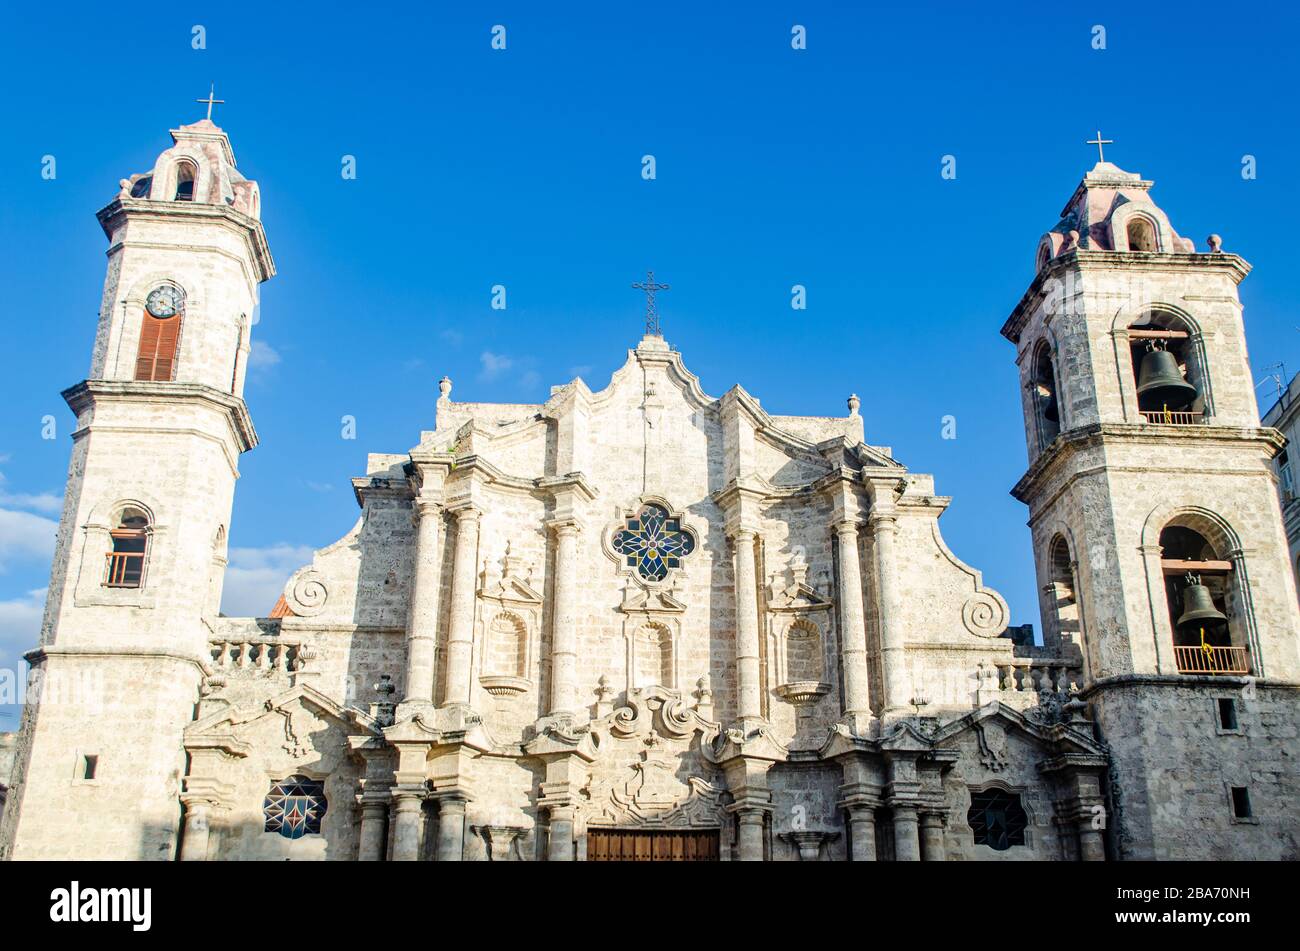 Particolare della facciata della Cattedrale di l'Avana nella Vecchia Havana Foto Stock